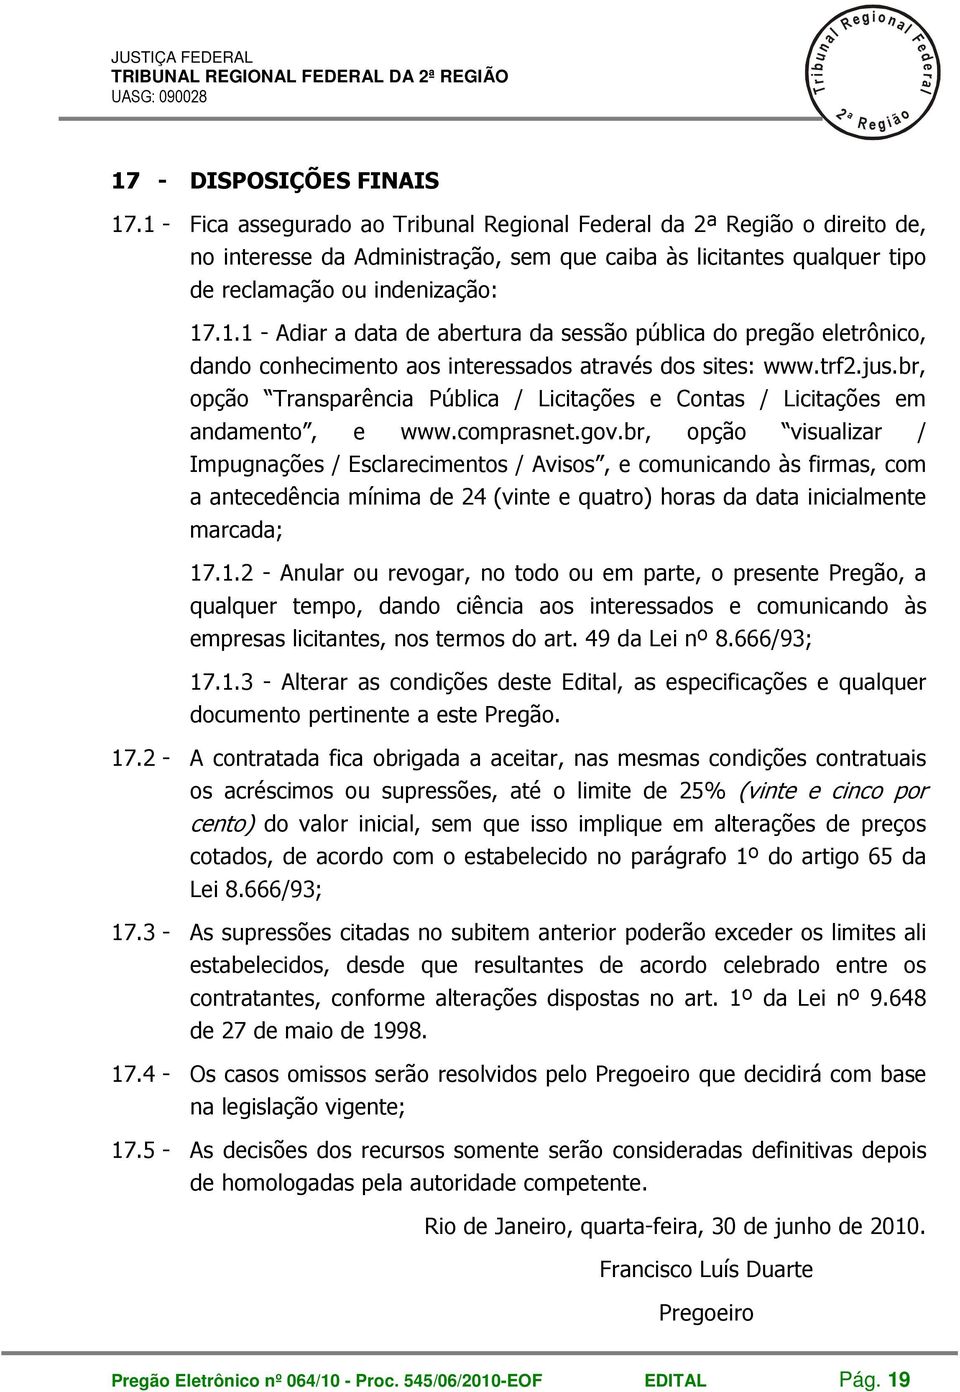 trf.jus.br, opção ansparência Púbica / Licitações e Contas / Licitações em andamento, e www.comprasnet.gov.